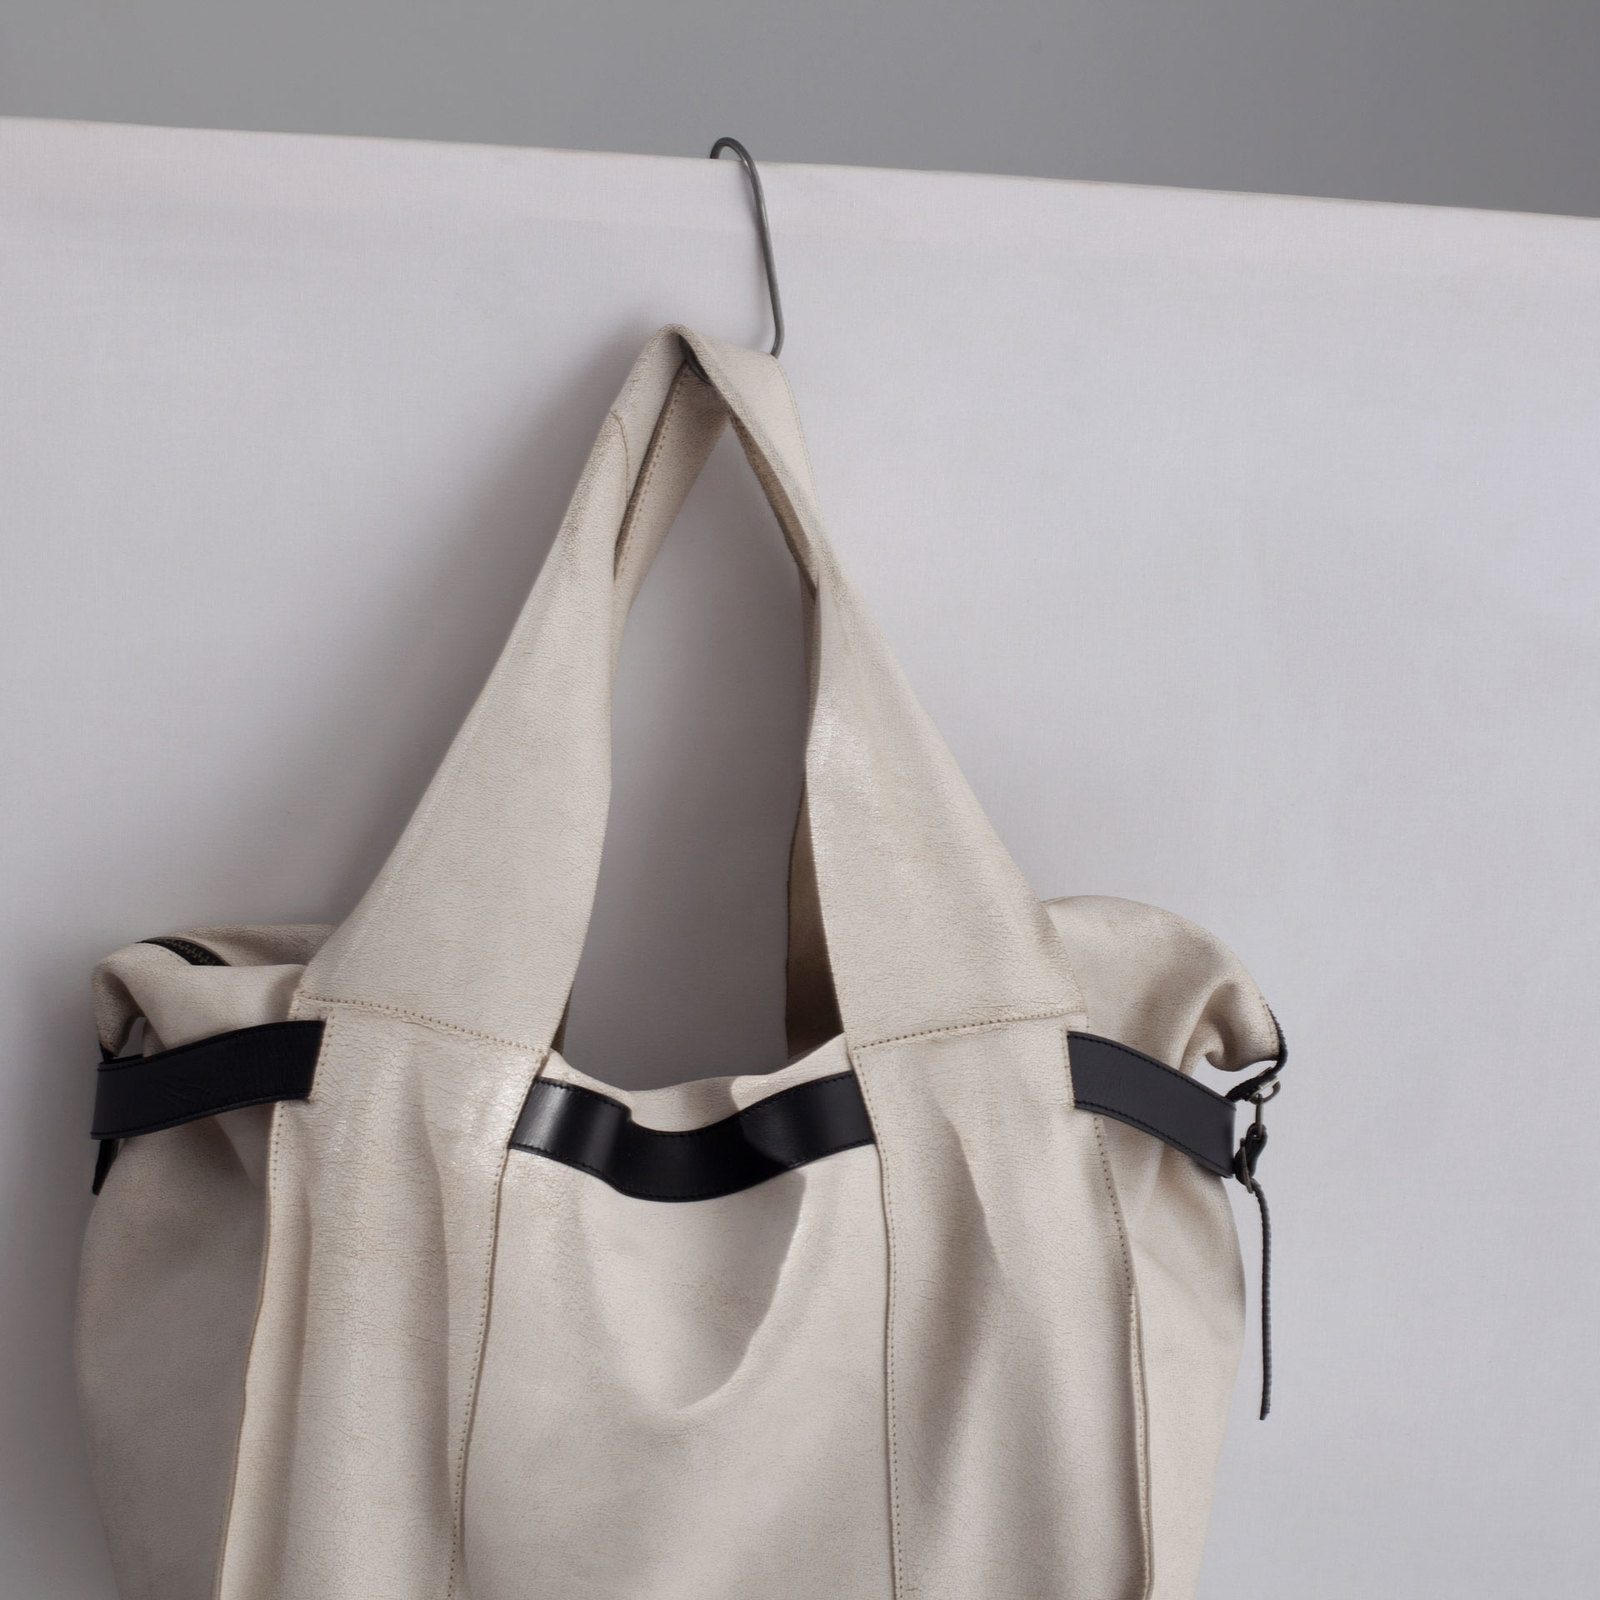 Zara fehér bőr táska 2014.6.3 fotója